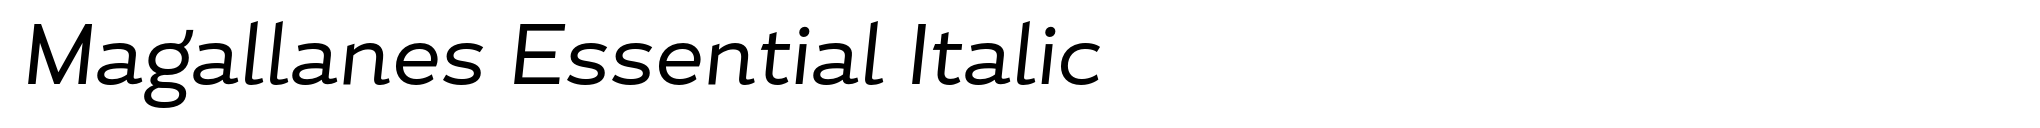 Magallanes Essential Italic image